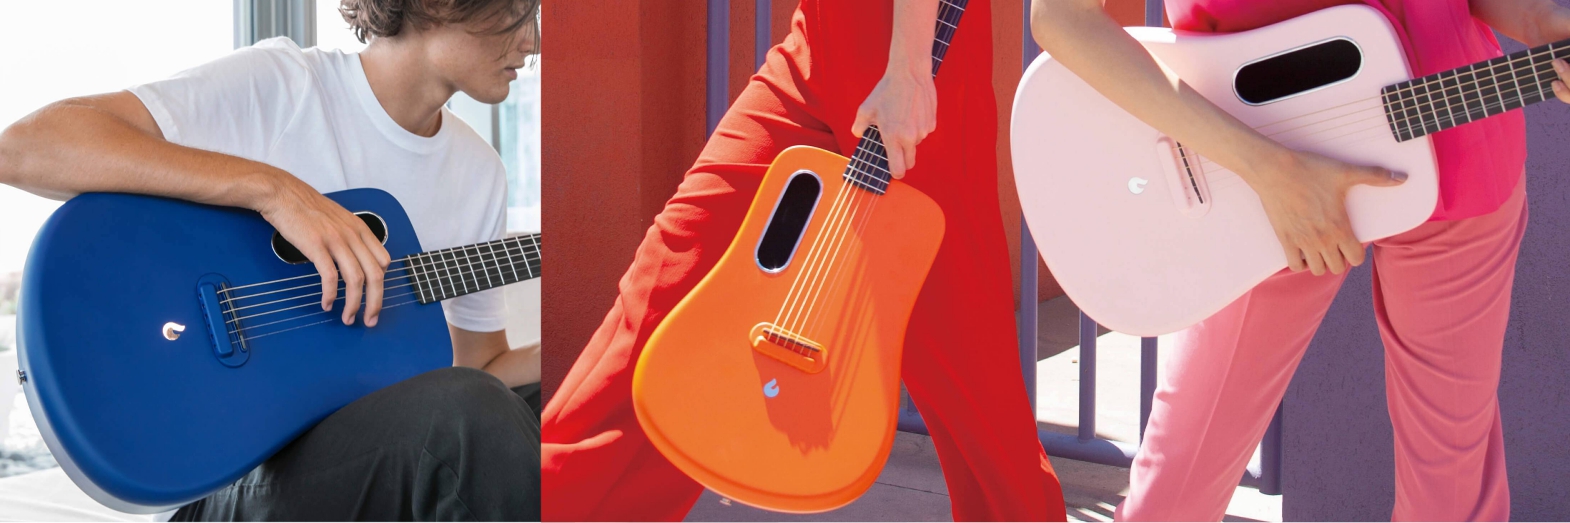 おしゃれで可愛くて弾き易いエレアコースティックギター Lava Music Lava Me2 が入荷致しました アリオ橋本店 店舗情報 島村楽器